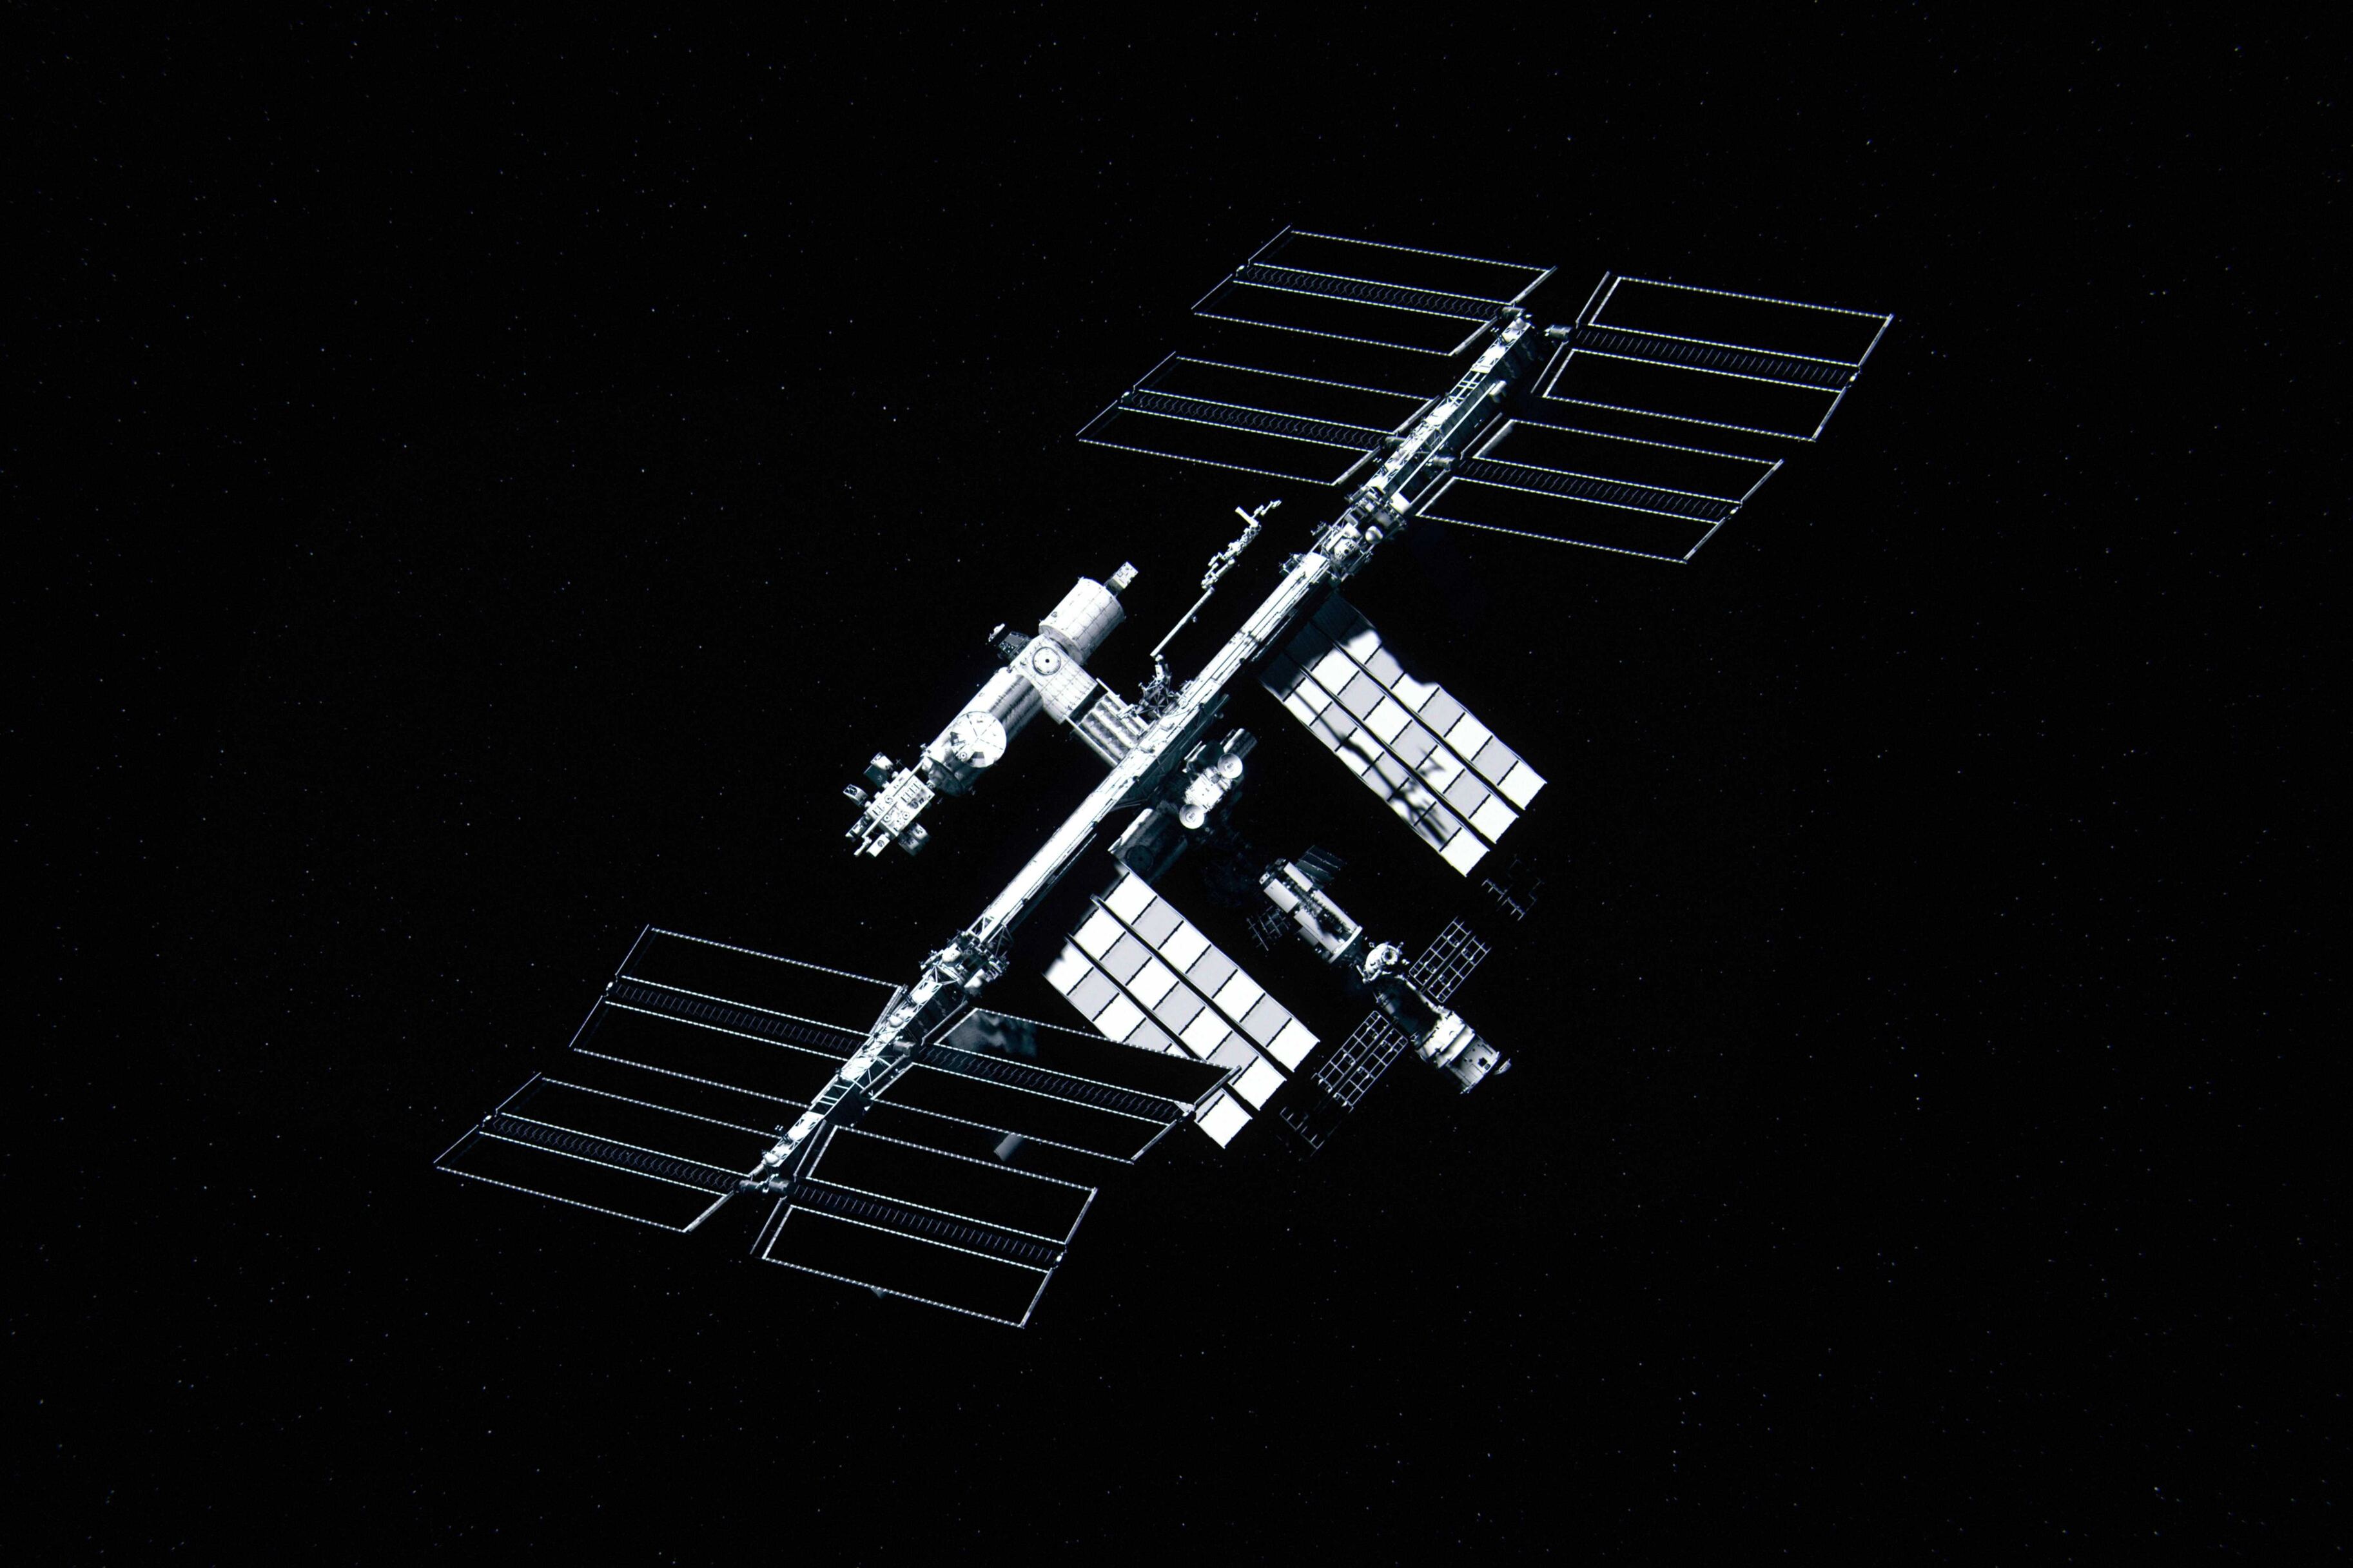 Москвичи и жители области смогут наблюдать пролёт МКС с 1 по 25 июля без телескопа